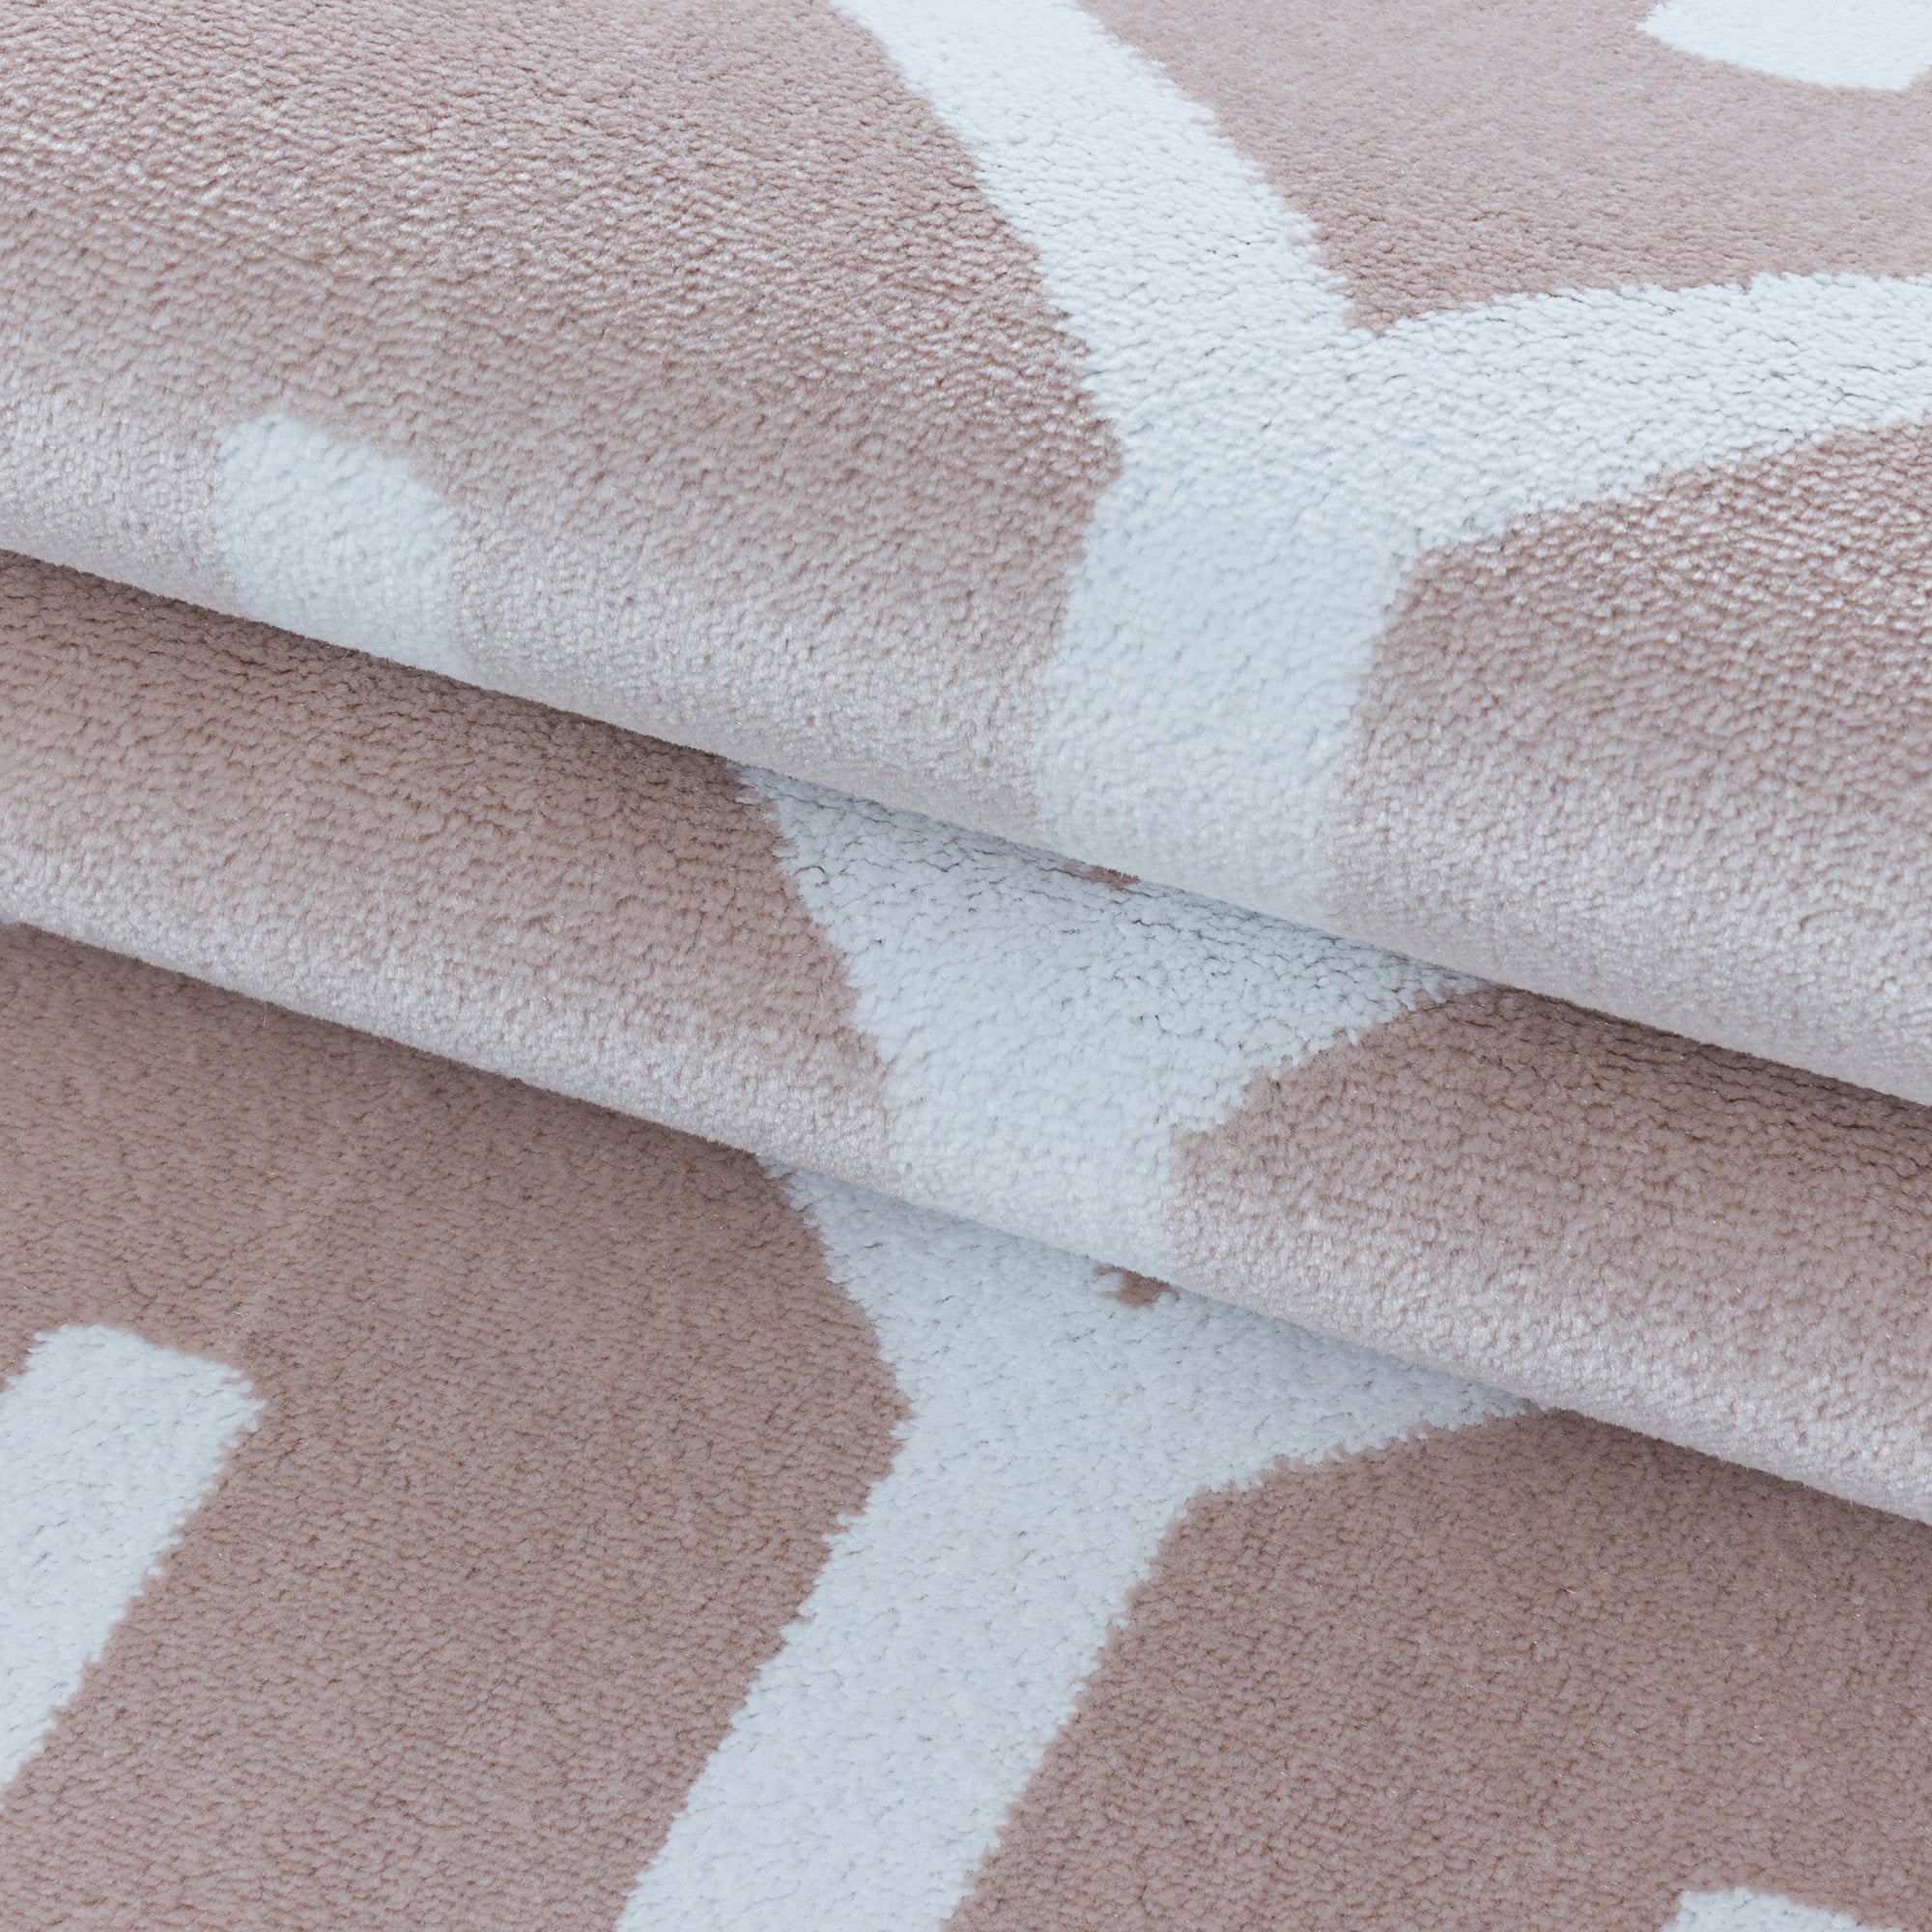 Weicher Kurzflor Teppich Wohnzimmerteppich Gitter Design Soft Flor Pink